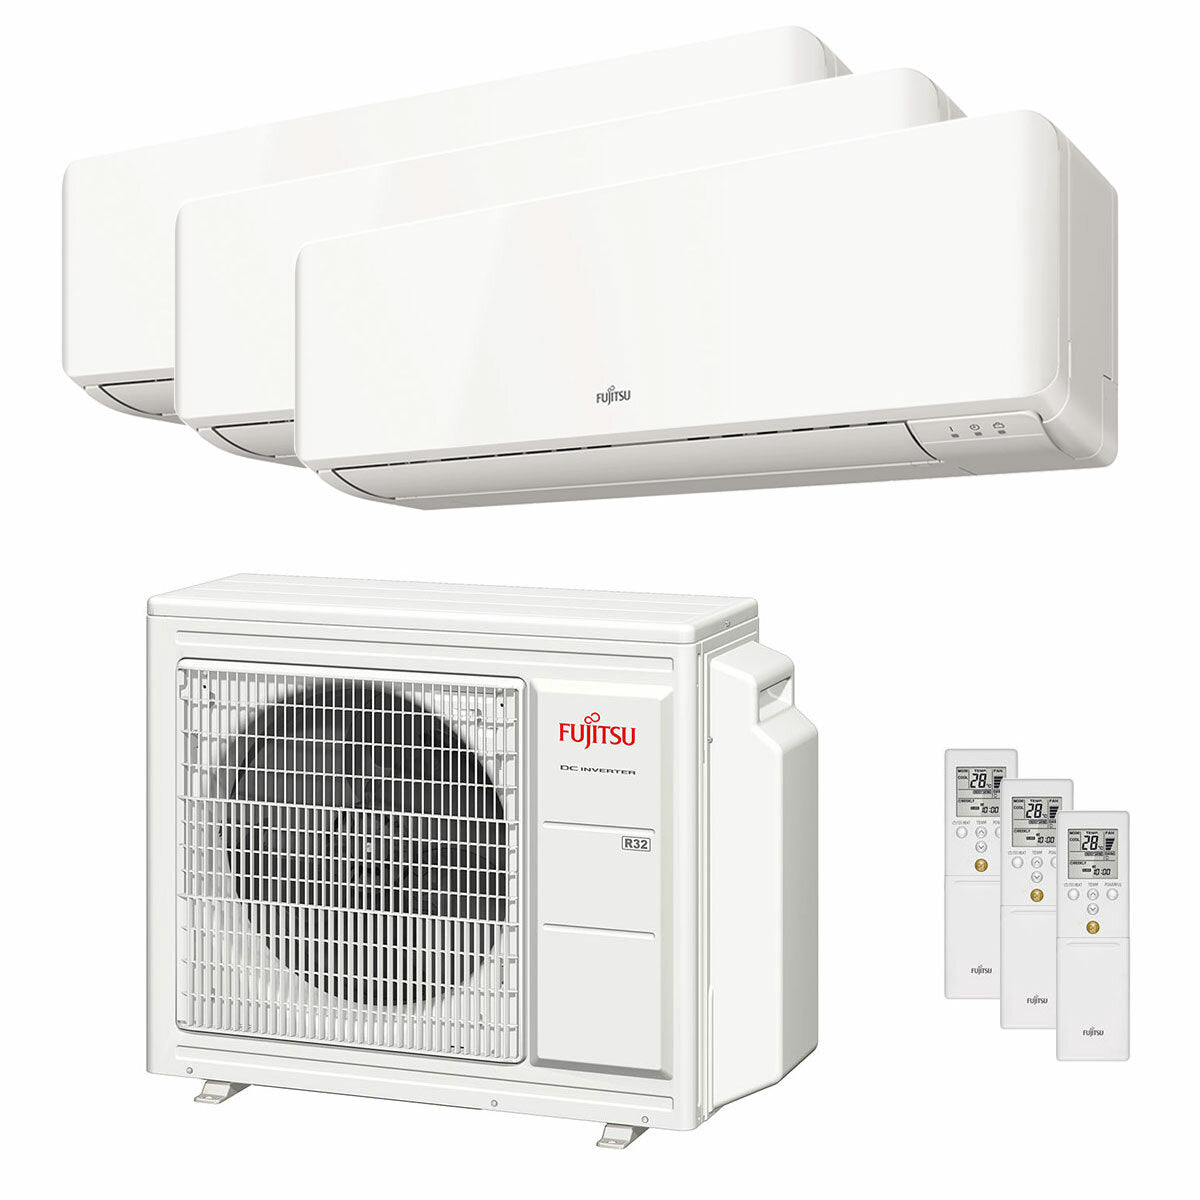 Climatiseur Fujitsu série KM WiFi essai split 7000+7000+7000 BTU inverter A+++ unité extérieure 5,4 kW